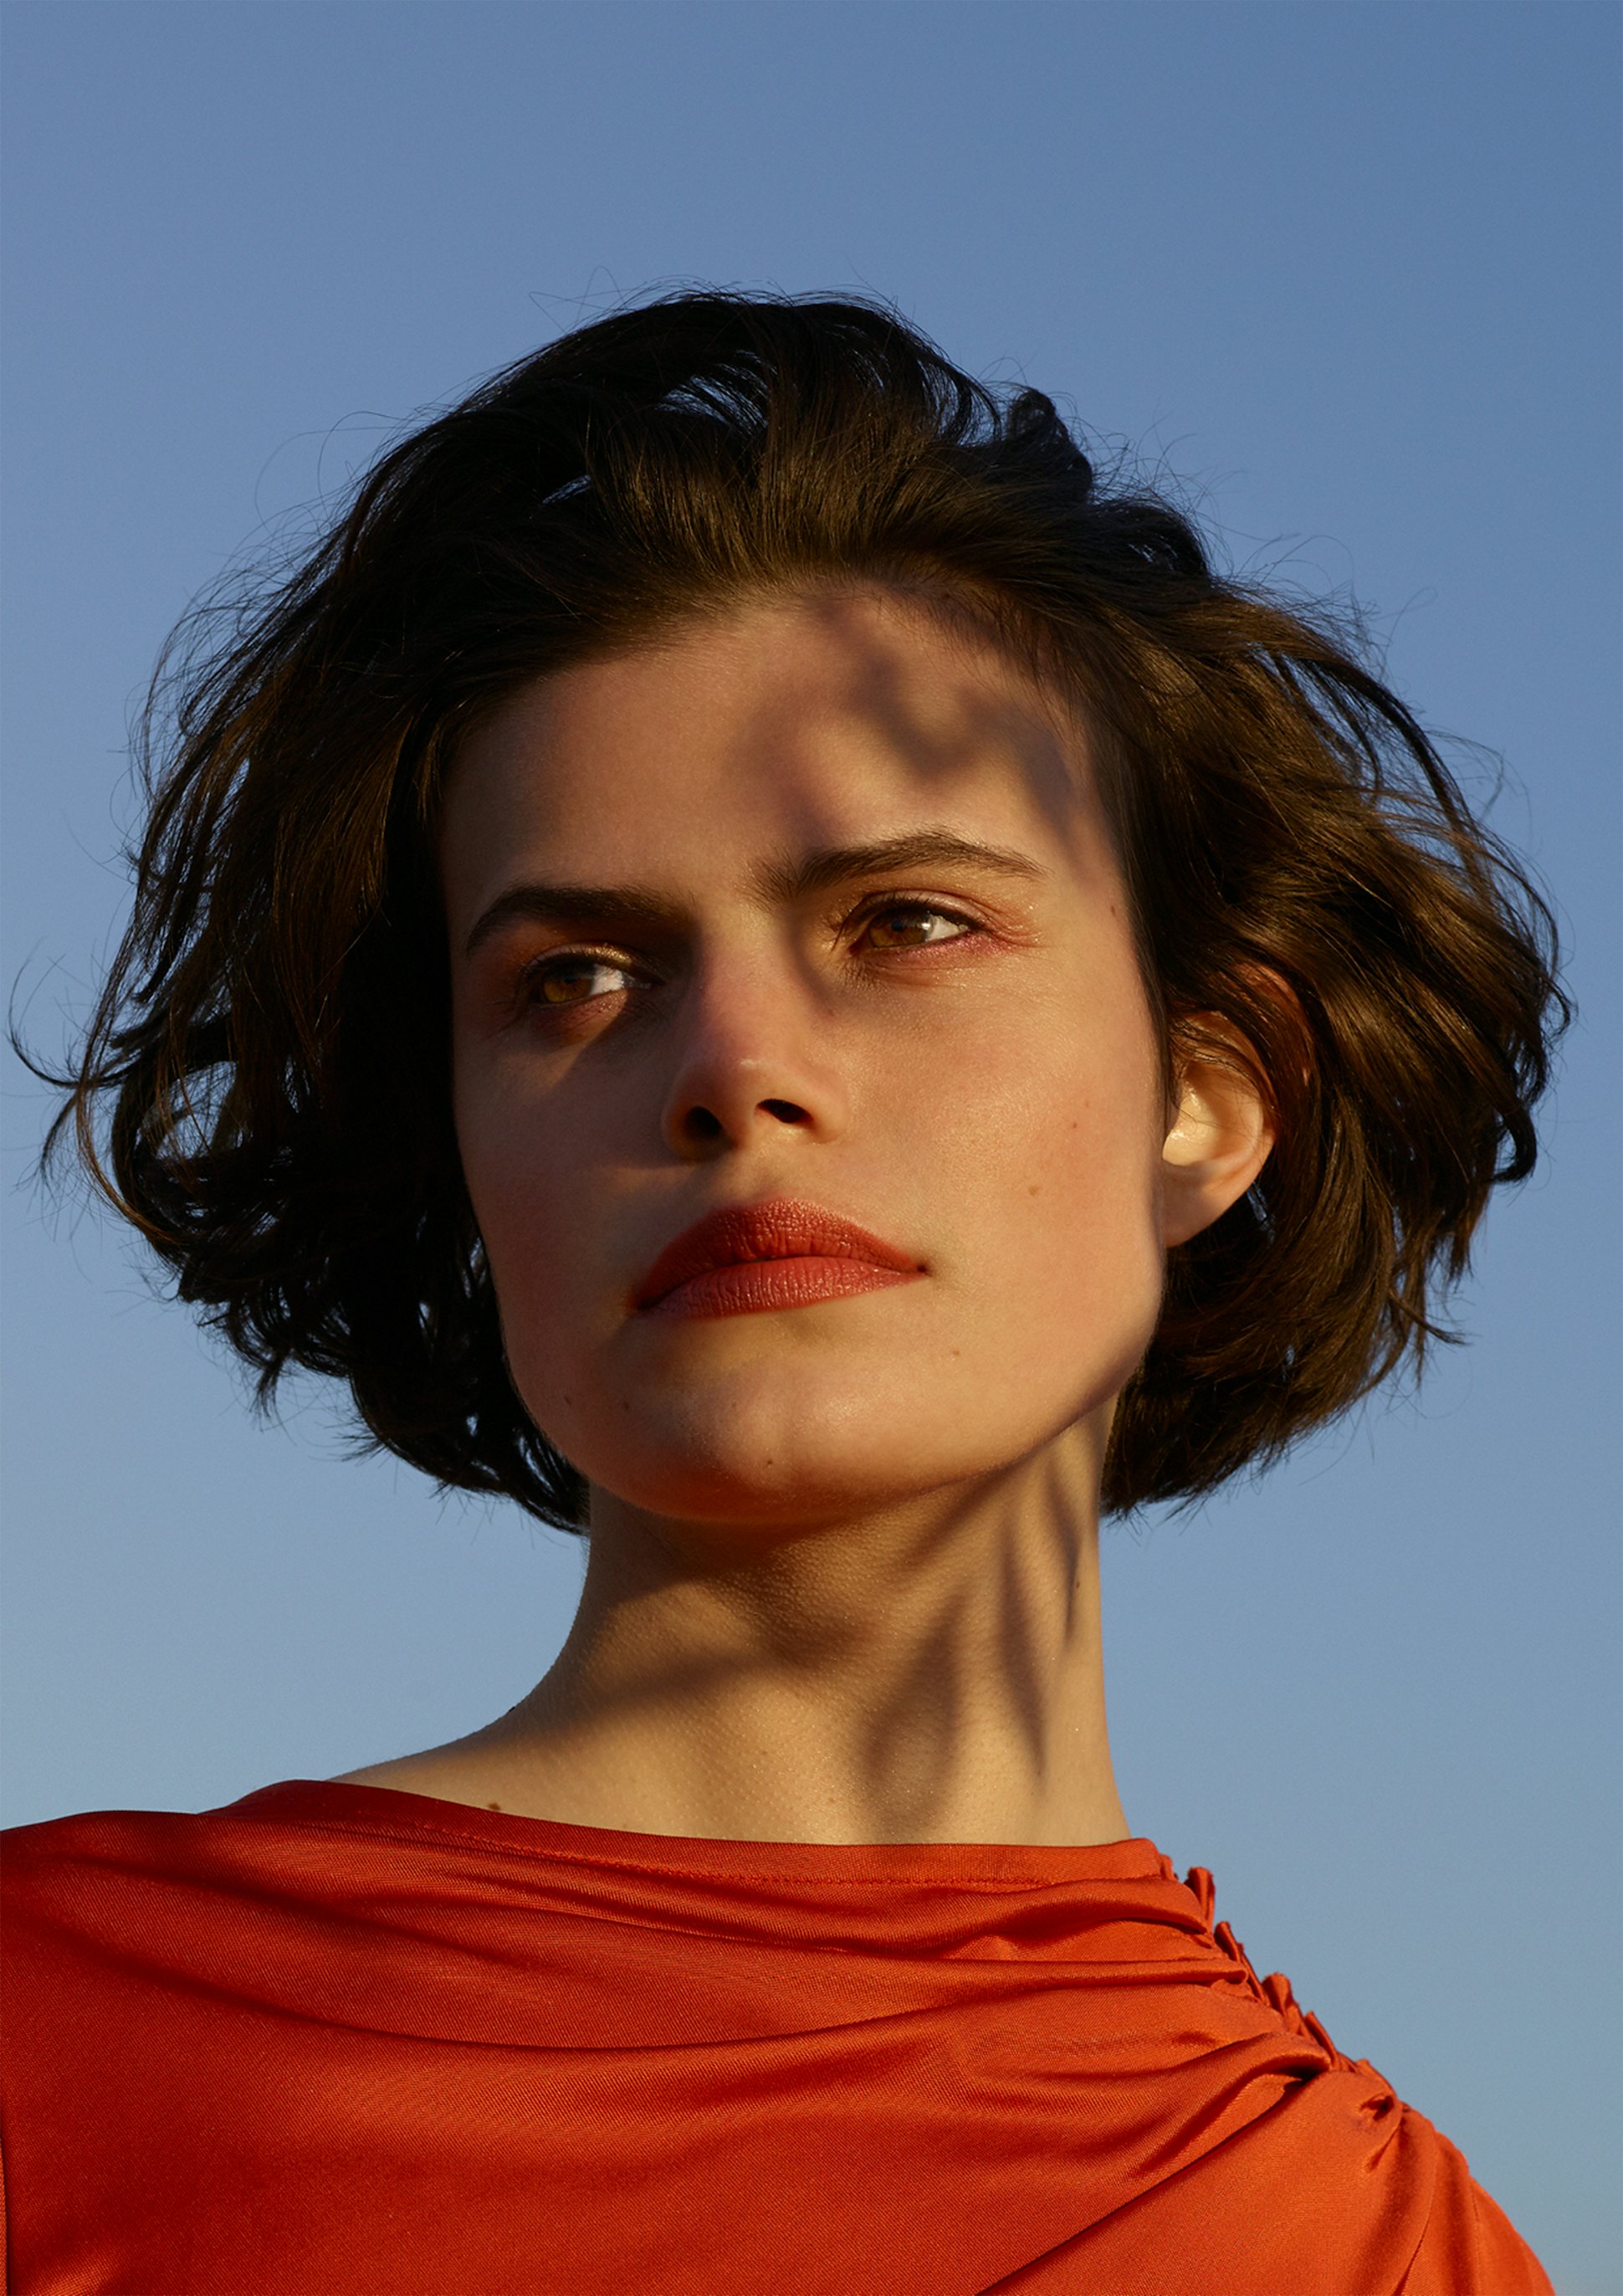 La bouche rouge image de la campagne par l'artiste et photographe Viviane Sassen